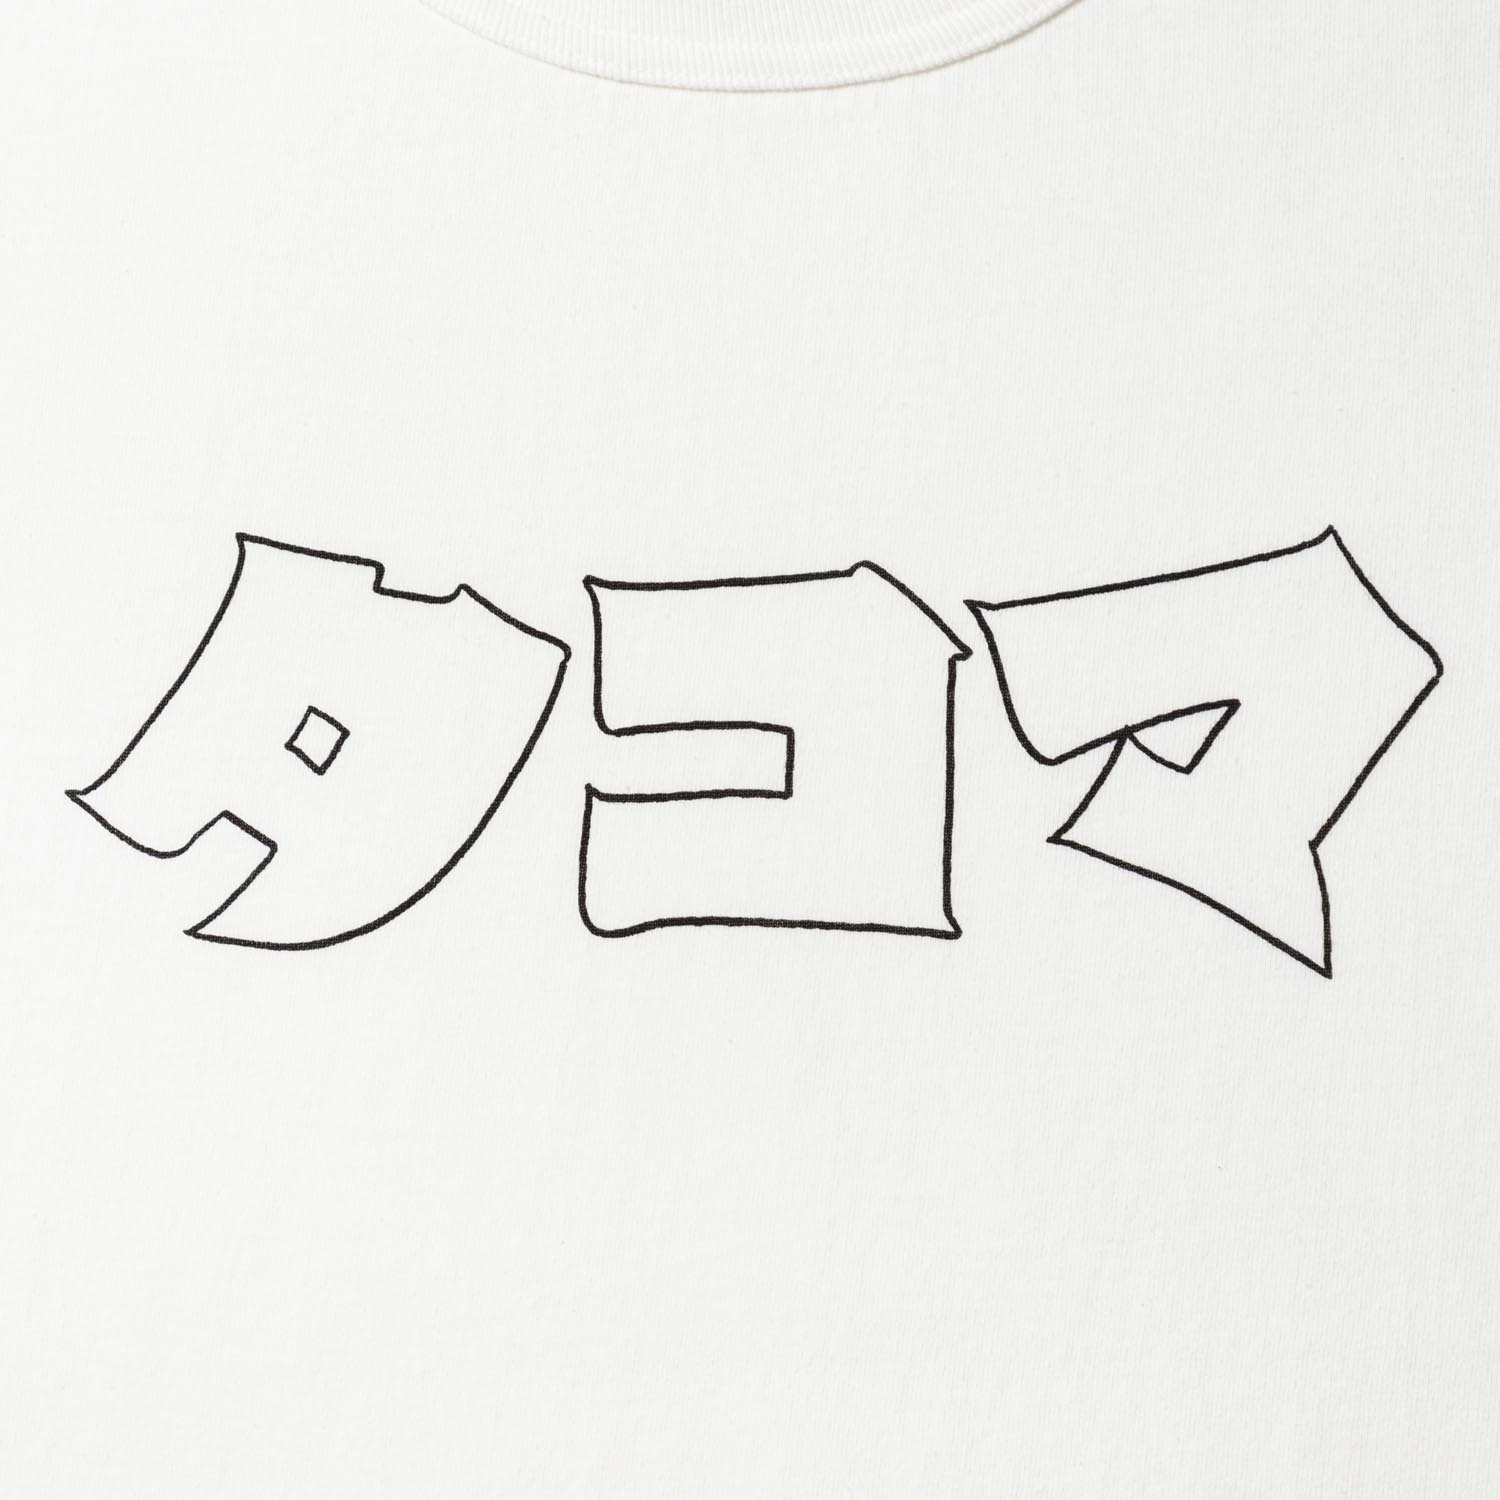 Katakana Tacoma designed by Tomoo Gokita